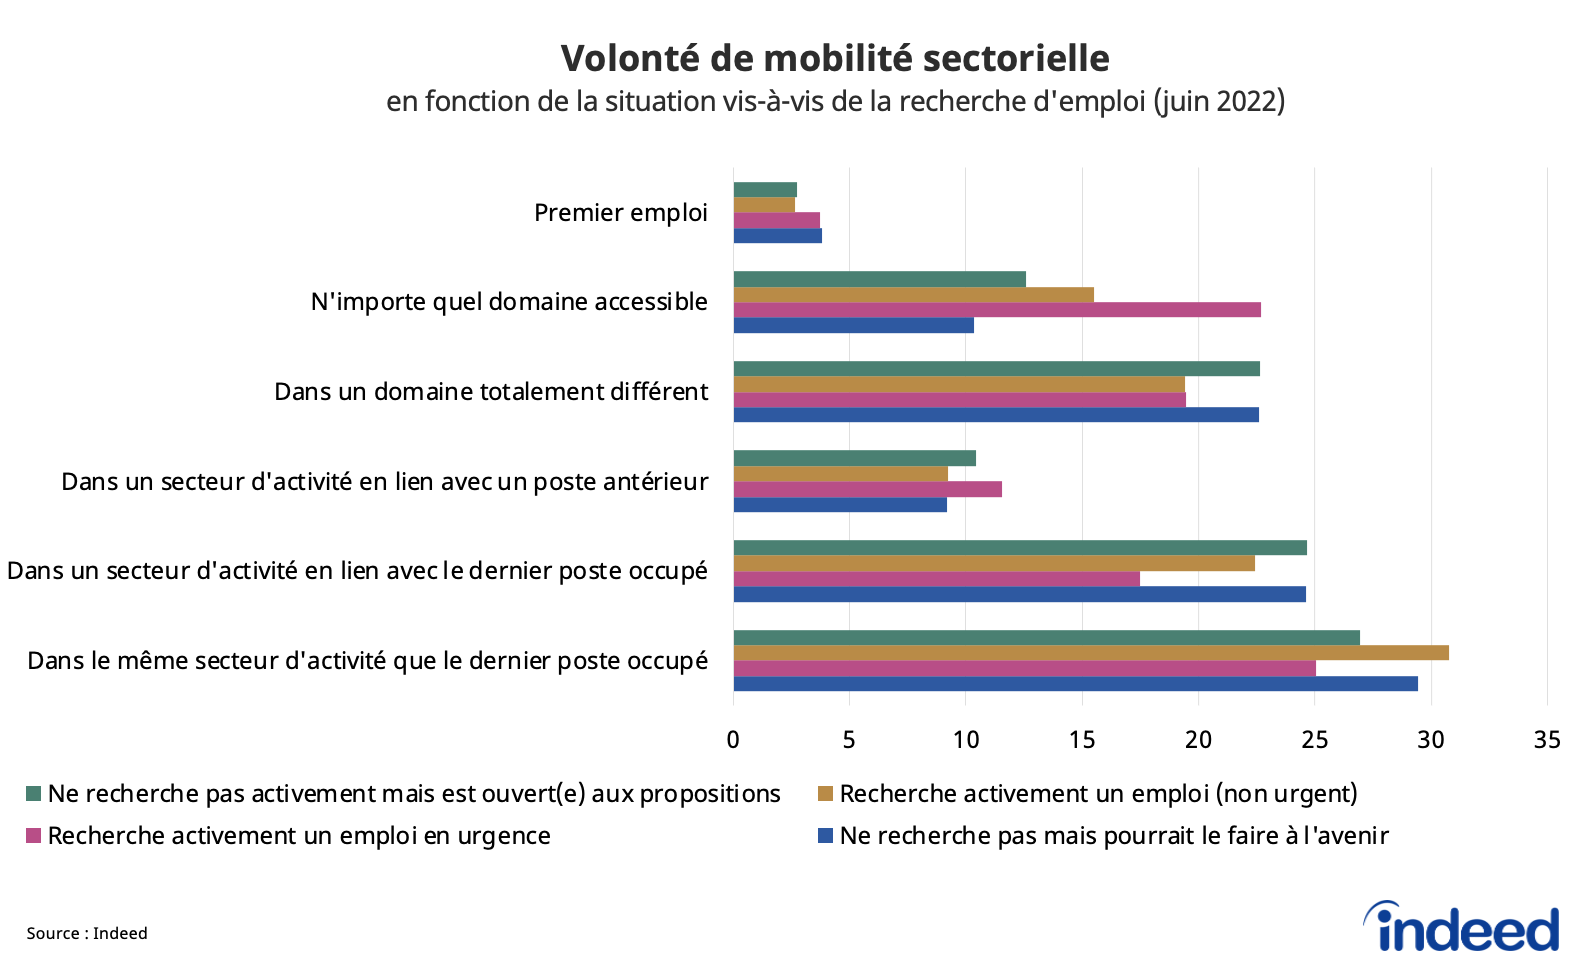 ente dans quelle mesure les candidats potentiels sont ouverts à la mobilité sectorielle, en fonction de la situation vis-à-vis de la recherche d’emploi, pour le mois juin 2022.